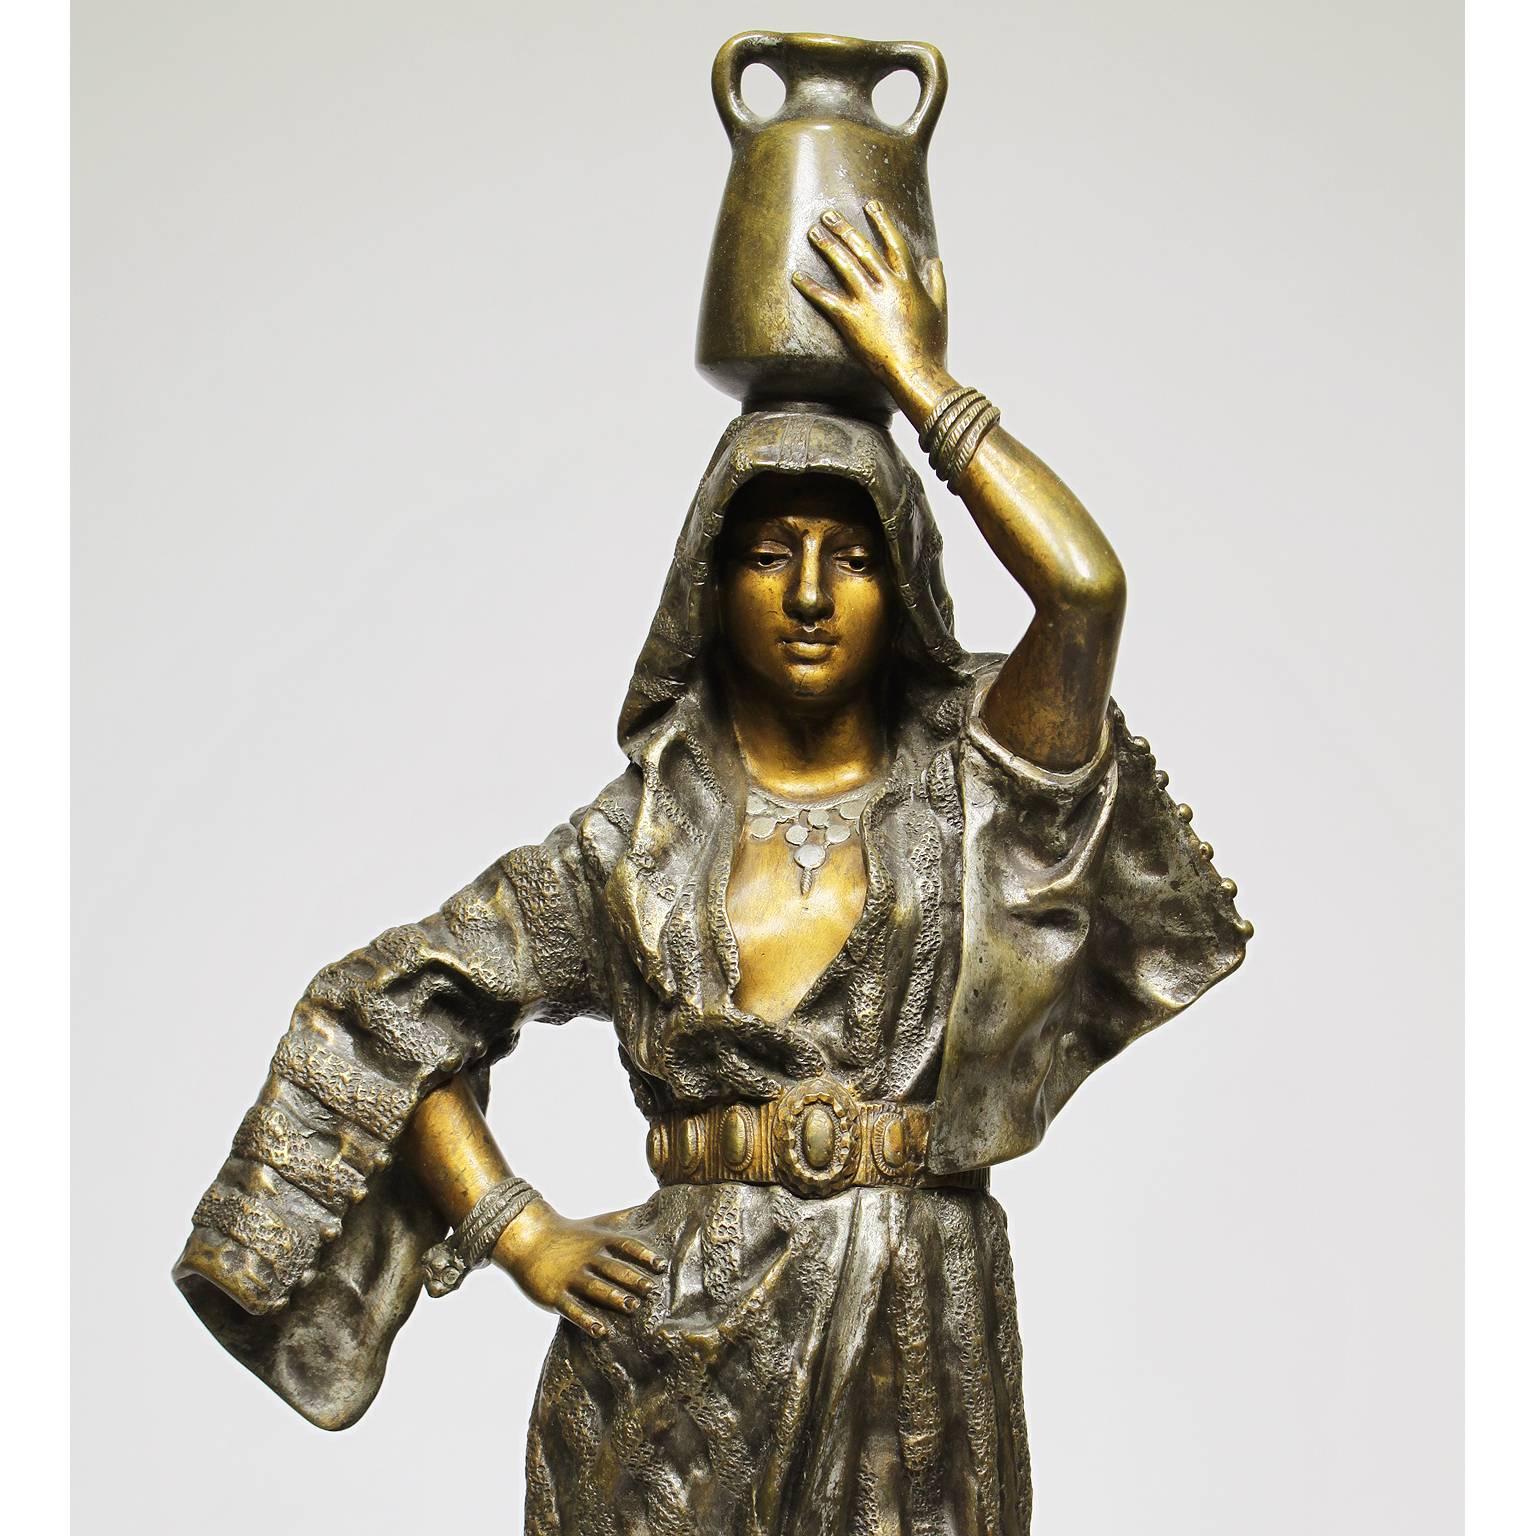 Belle sculpture orientaliste française du 19e-20e siècle en bronze patiné argenté et doré représentant 